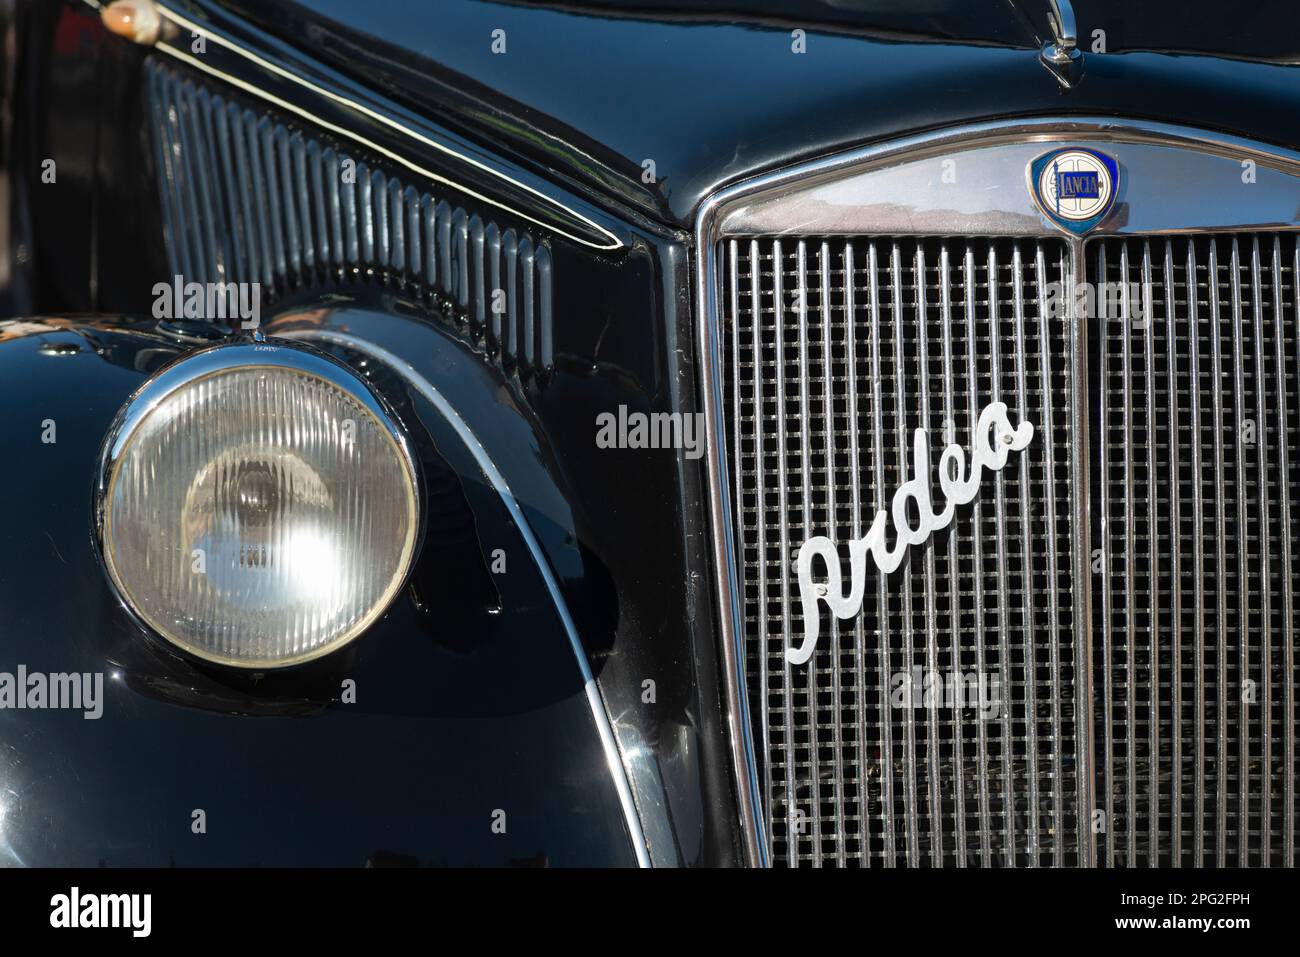 Italie, Lombardie, rencontre des voitures anciennes, Lancia Ardea radiateur grille Banque D'Images